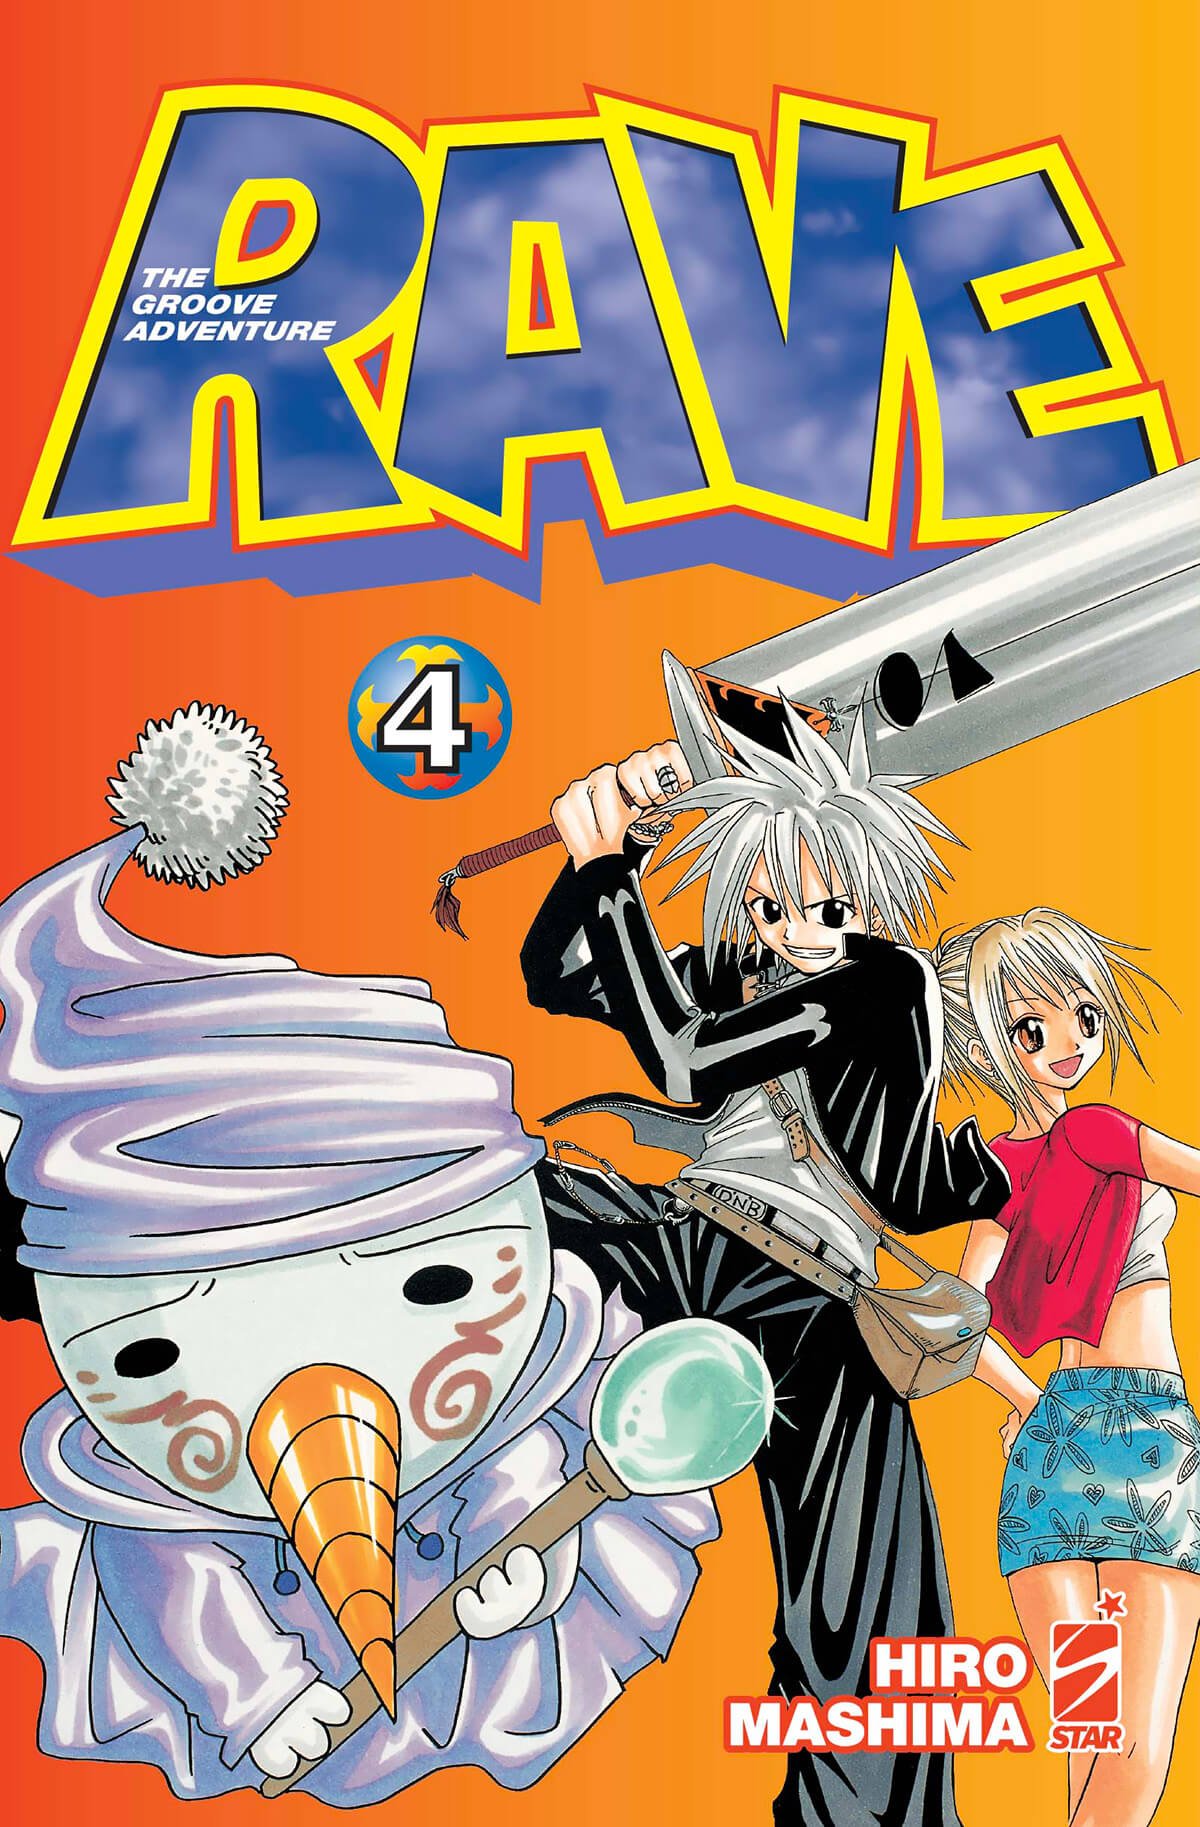 Rave - The Groove Adventure New Edition 4, parmi les sorties mangas Star Comics du 9 janvier 2024.